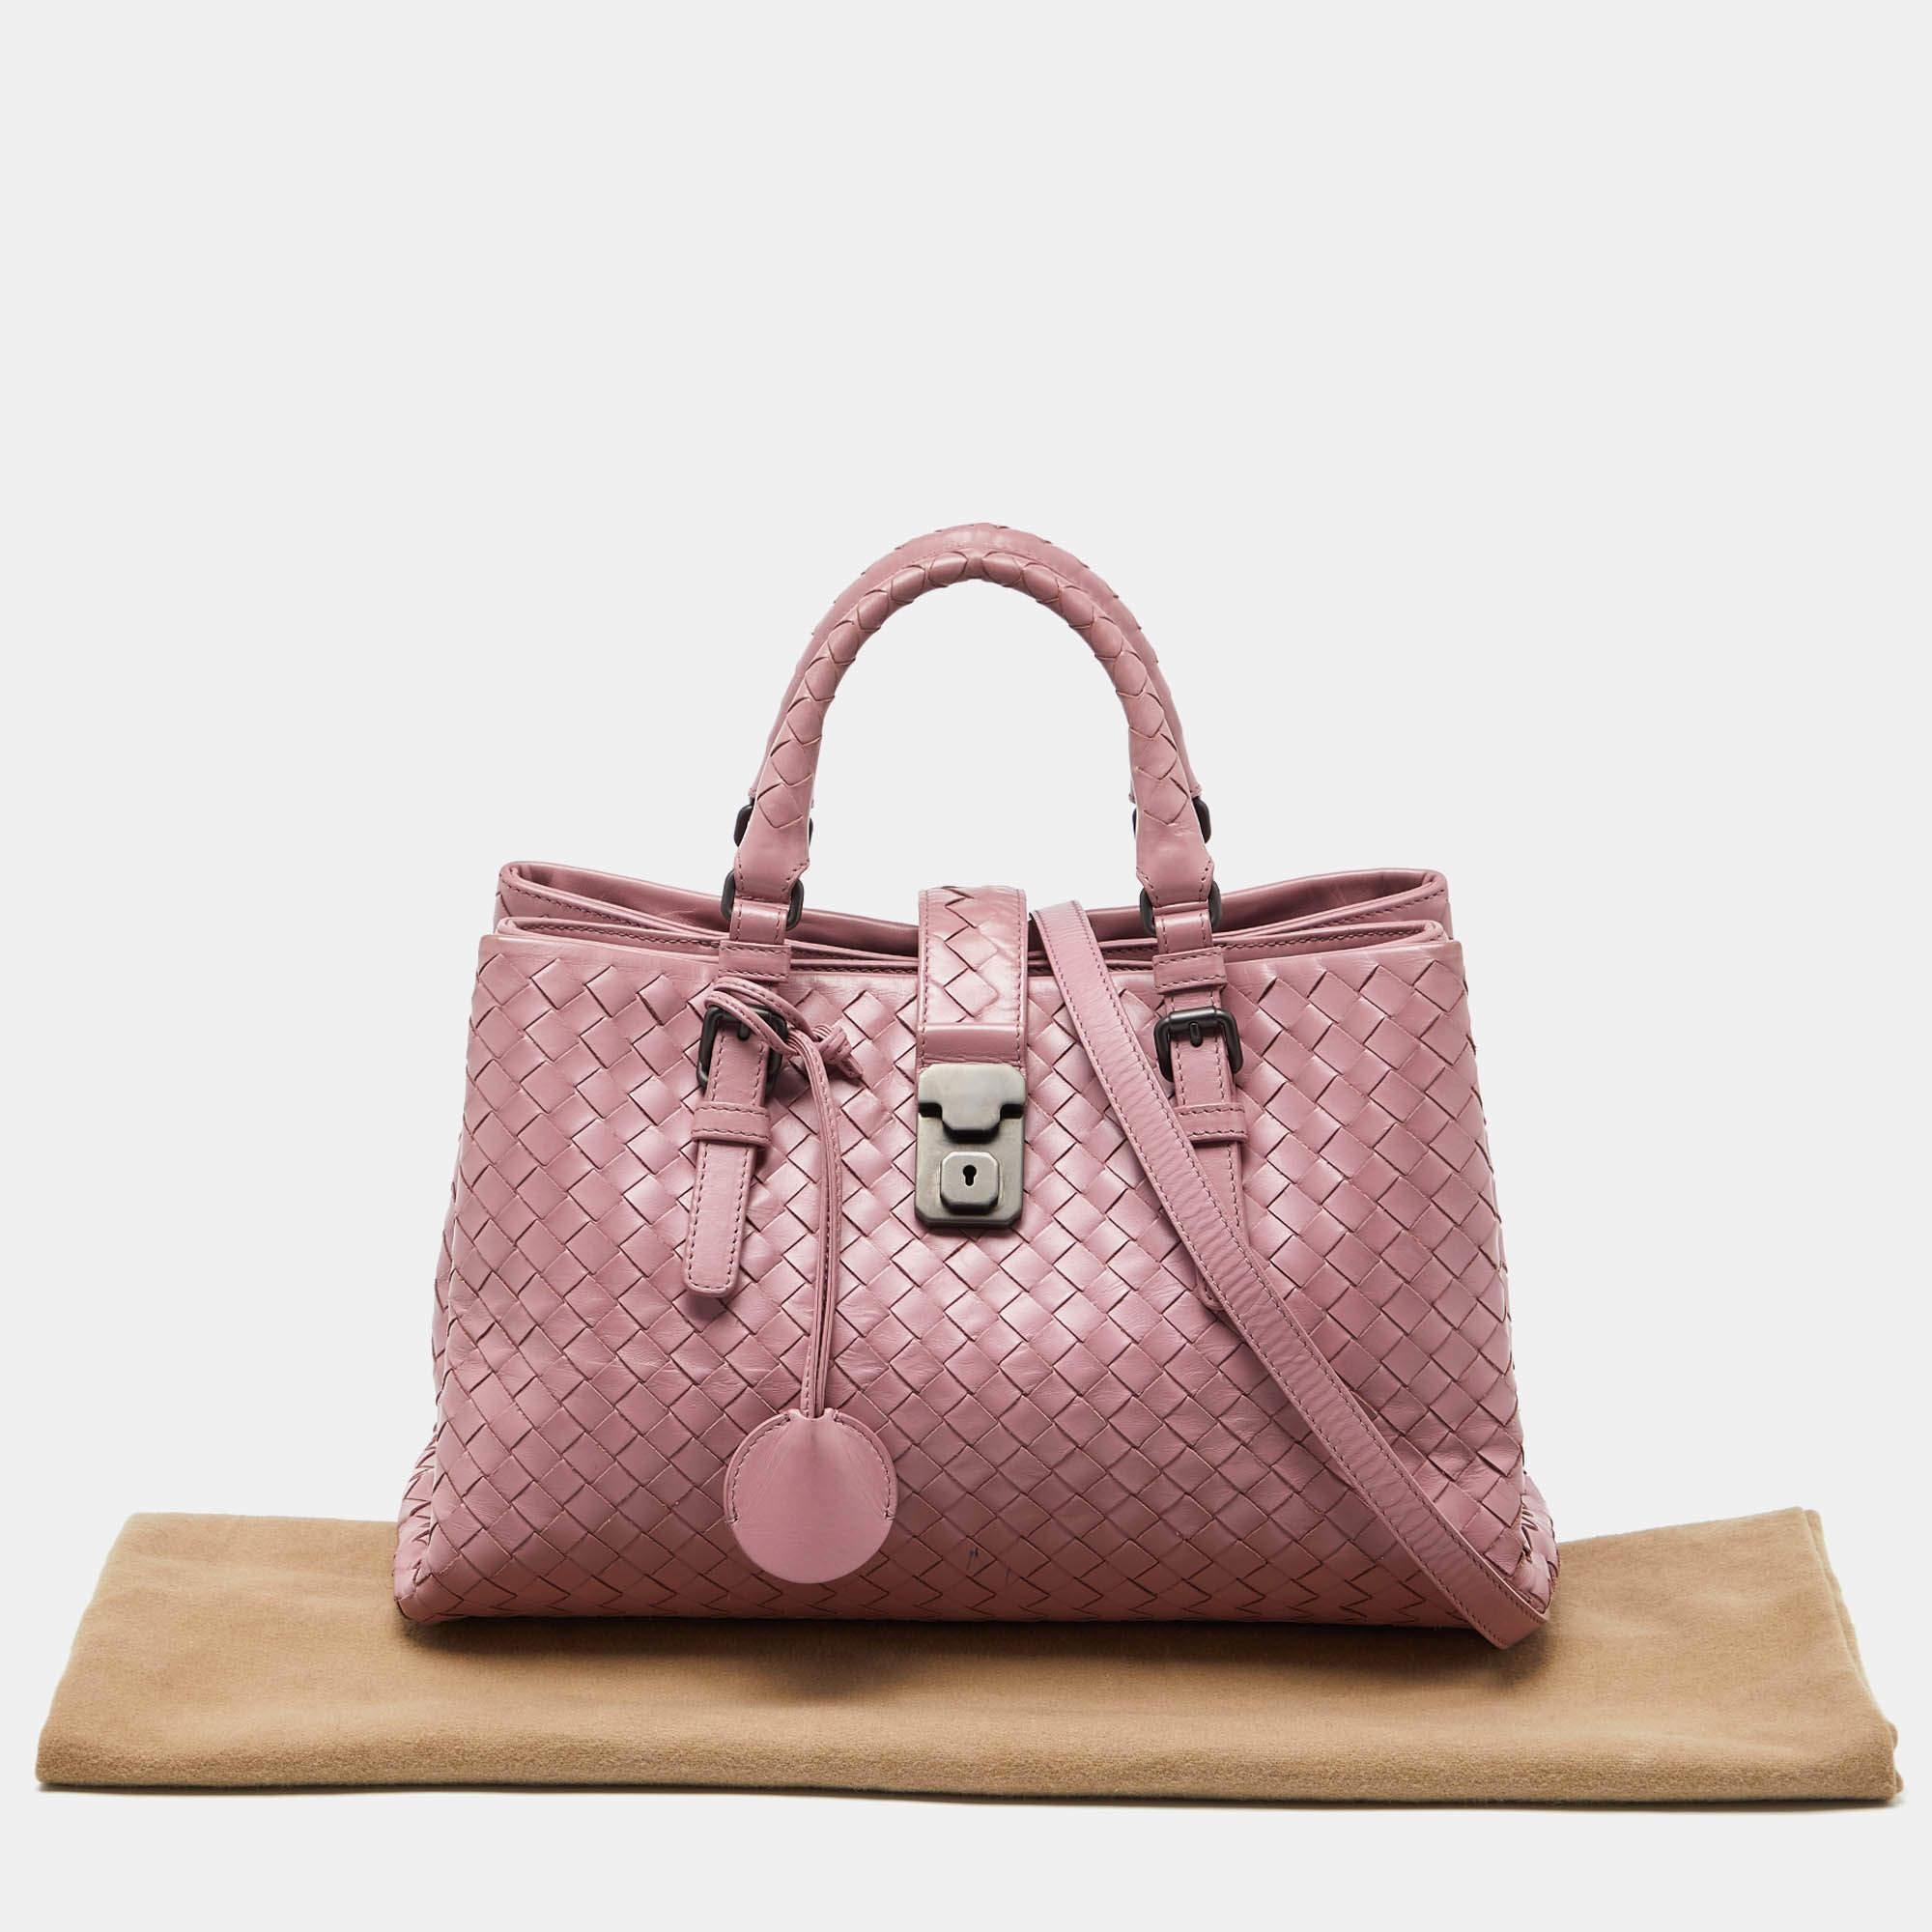 Bottega Veneta Pink Intrecciato Leather Small Roma Tote For Sale 7